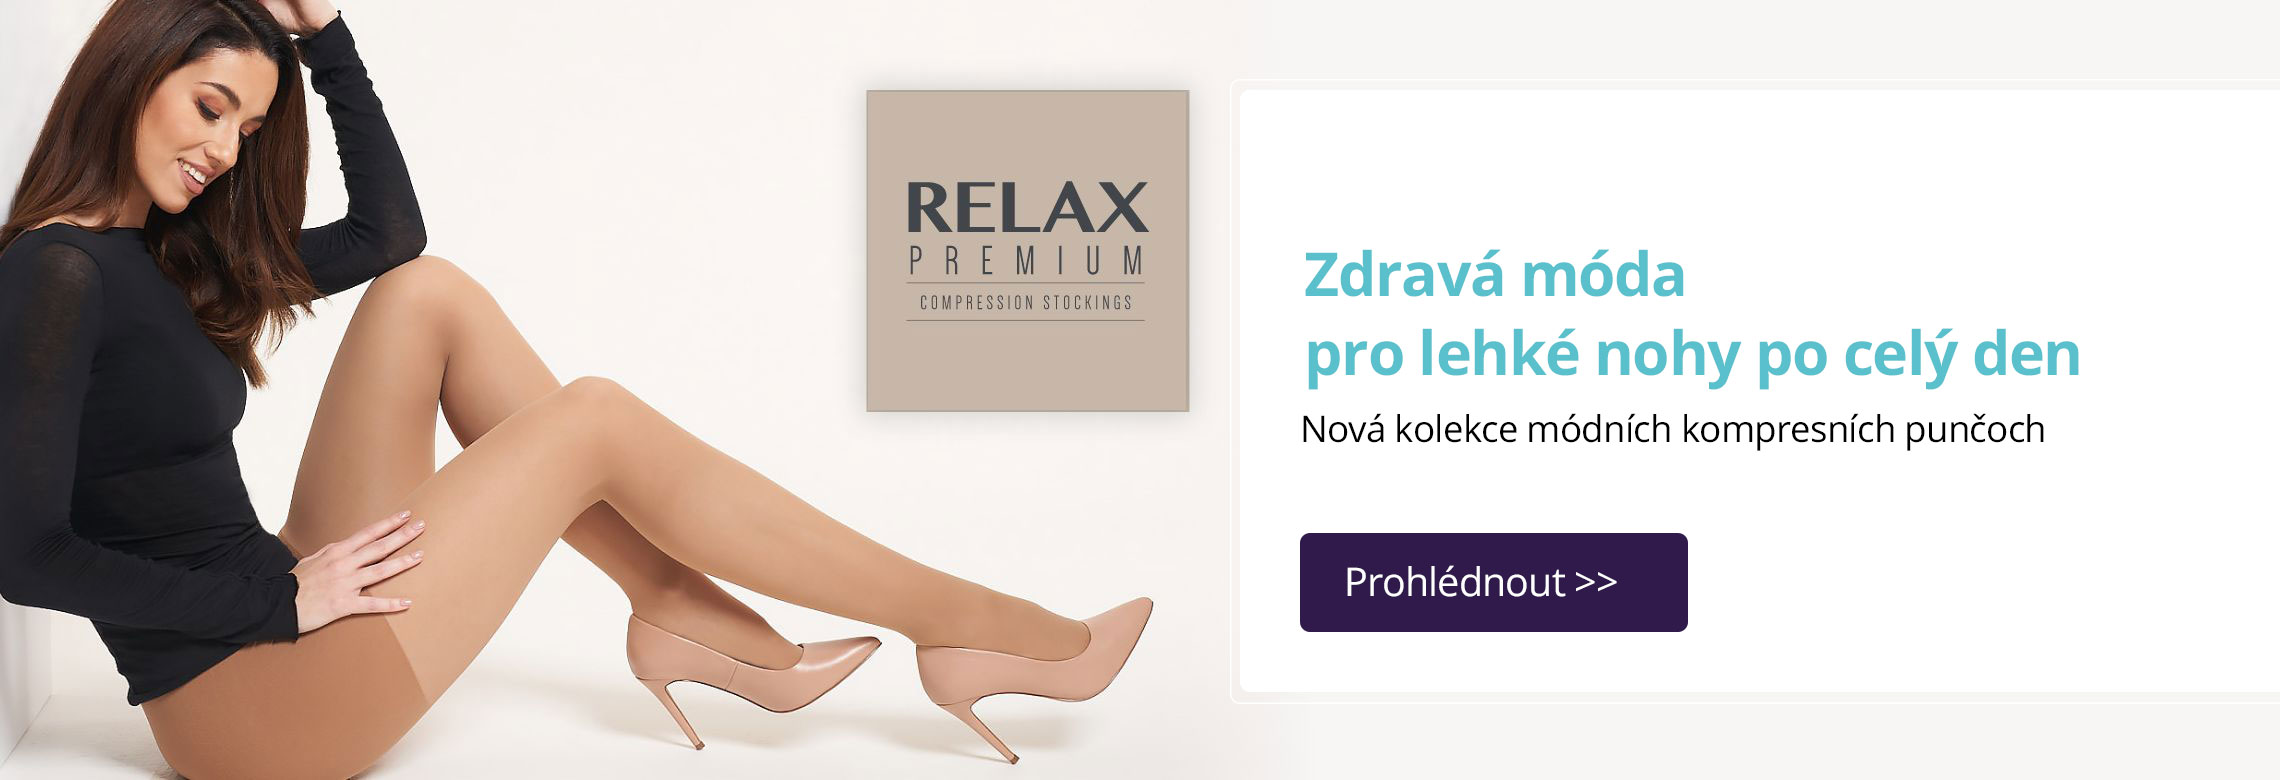 relax premium